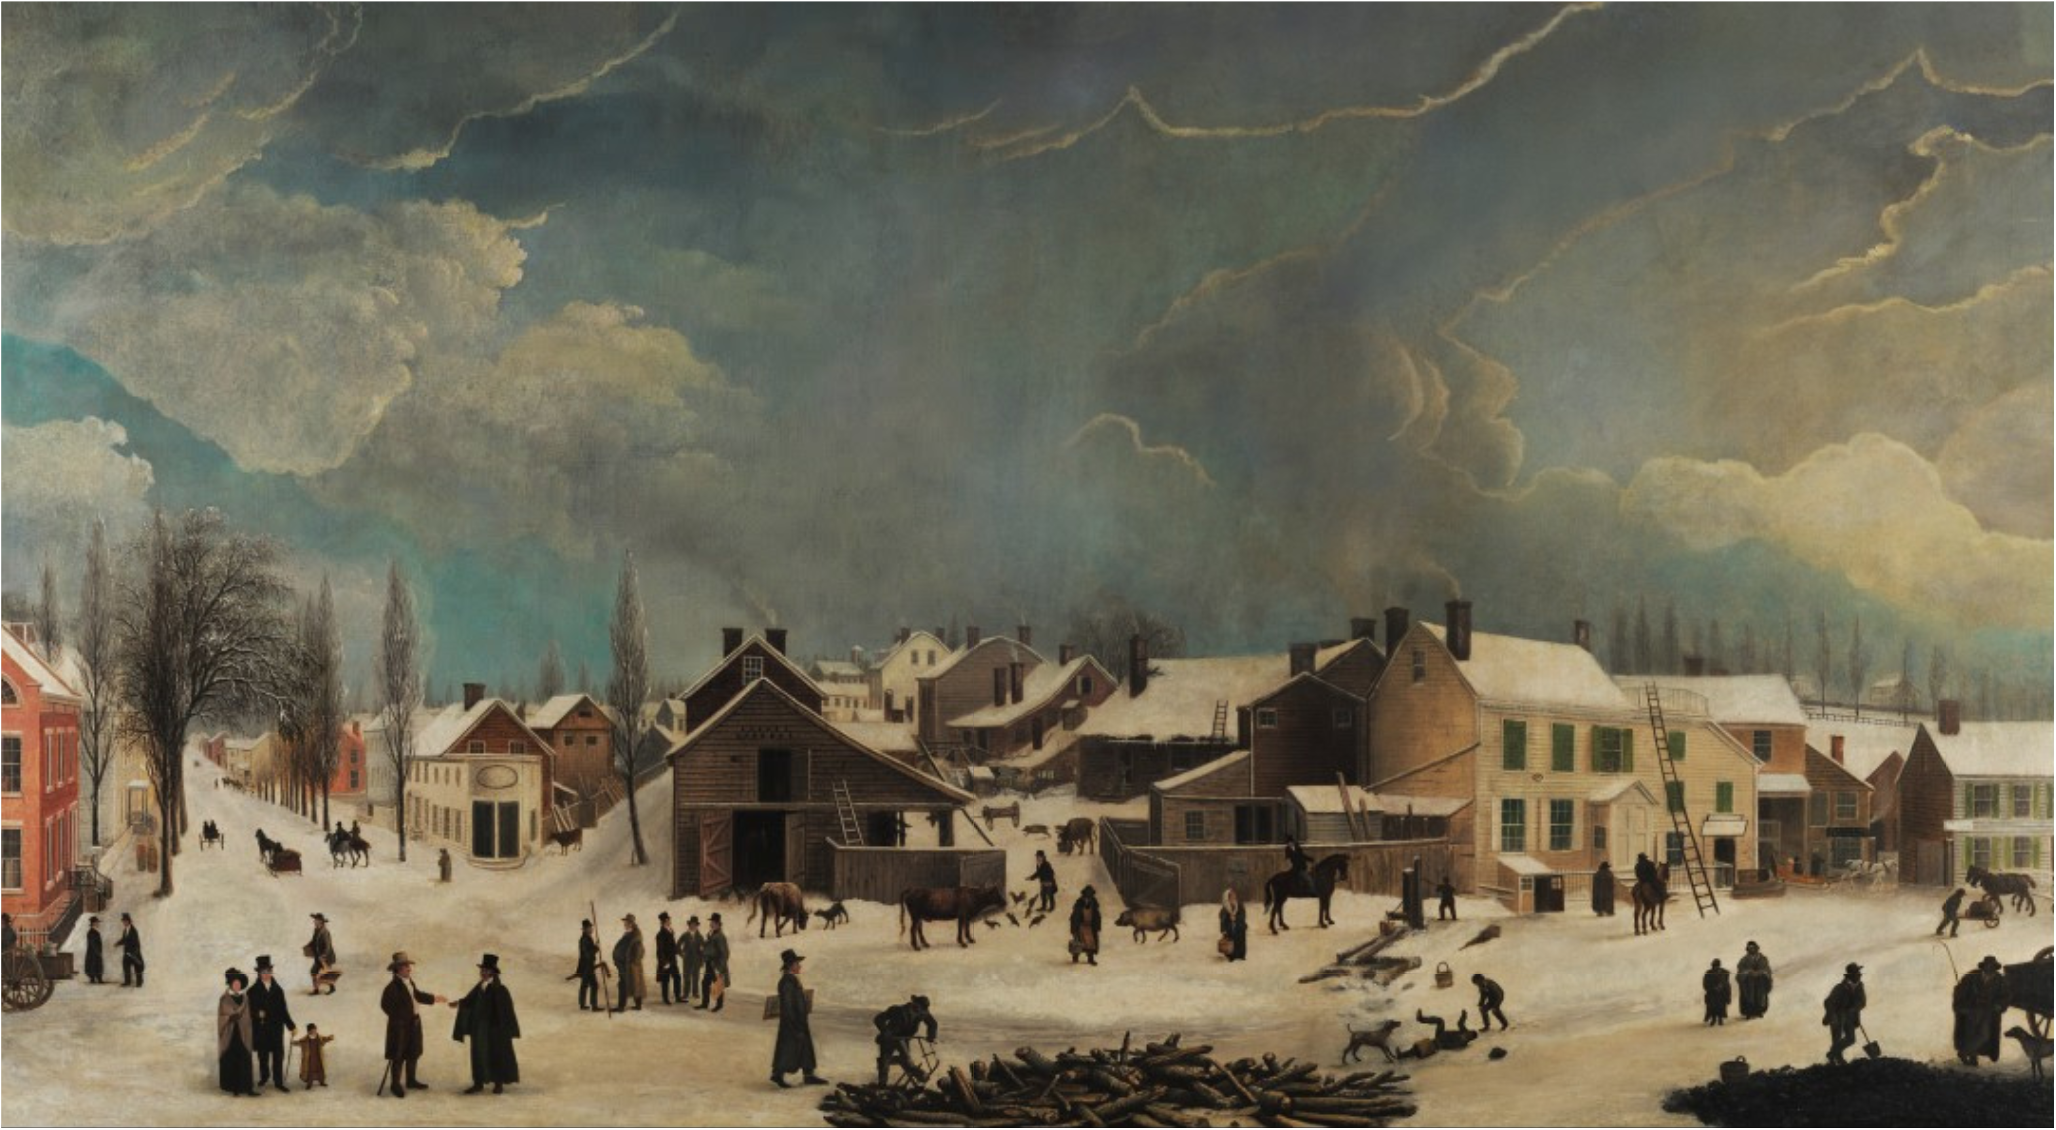 ブルックリンの冬景色 by Francis Guy - 1820年 - 147.3 x 269.2 cm 